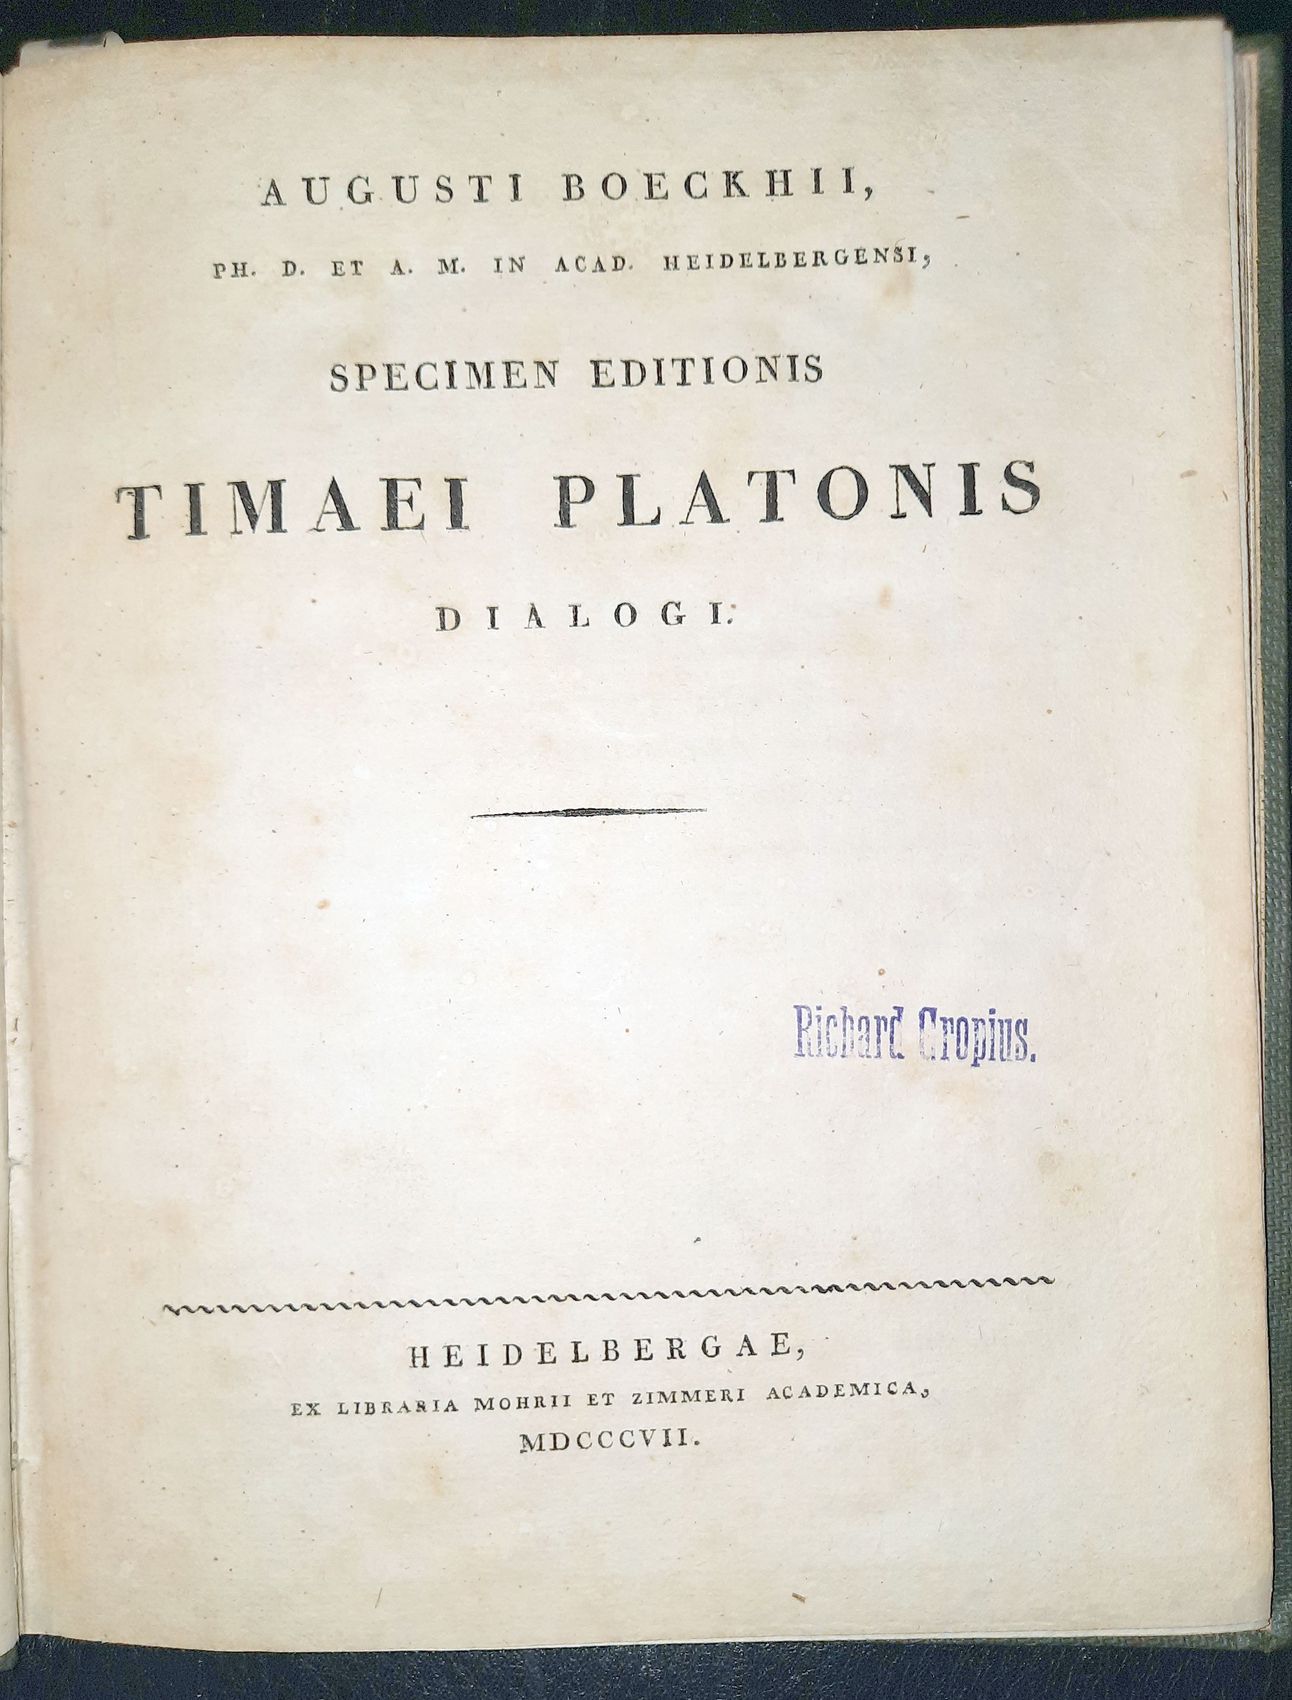 BCKH, AUGUST: - Specimen editionis Timaei Platonis dialogi..